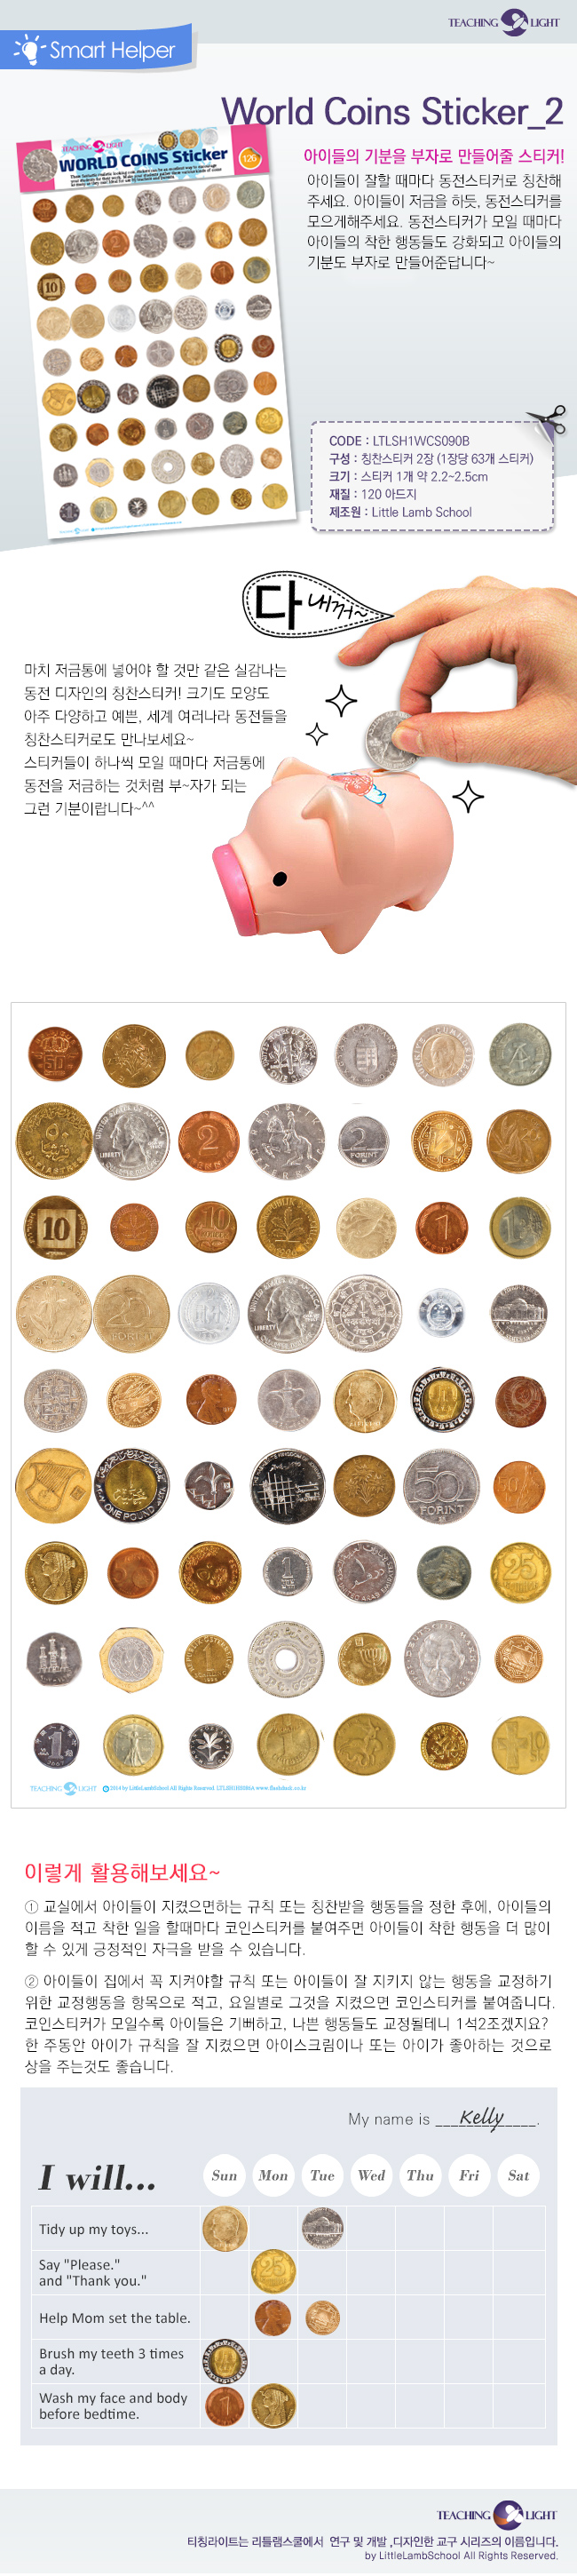 [칭찬교구] 월드코인스티커_10/ (World Coins Sticker_10) 